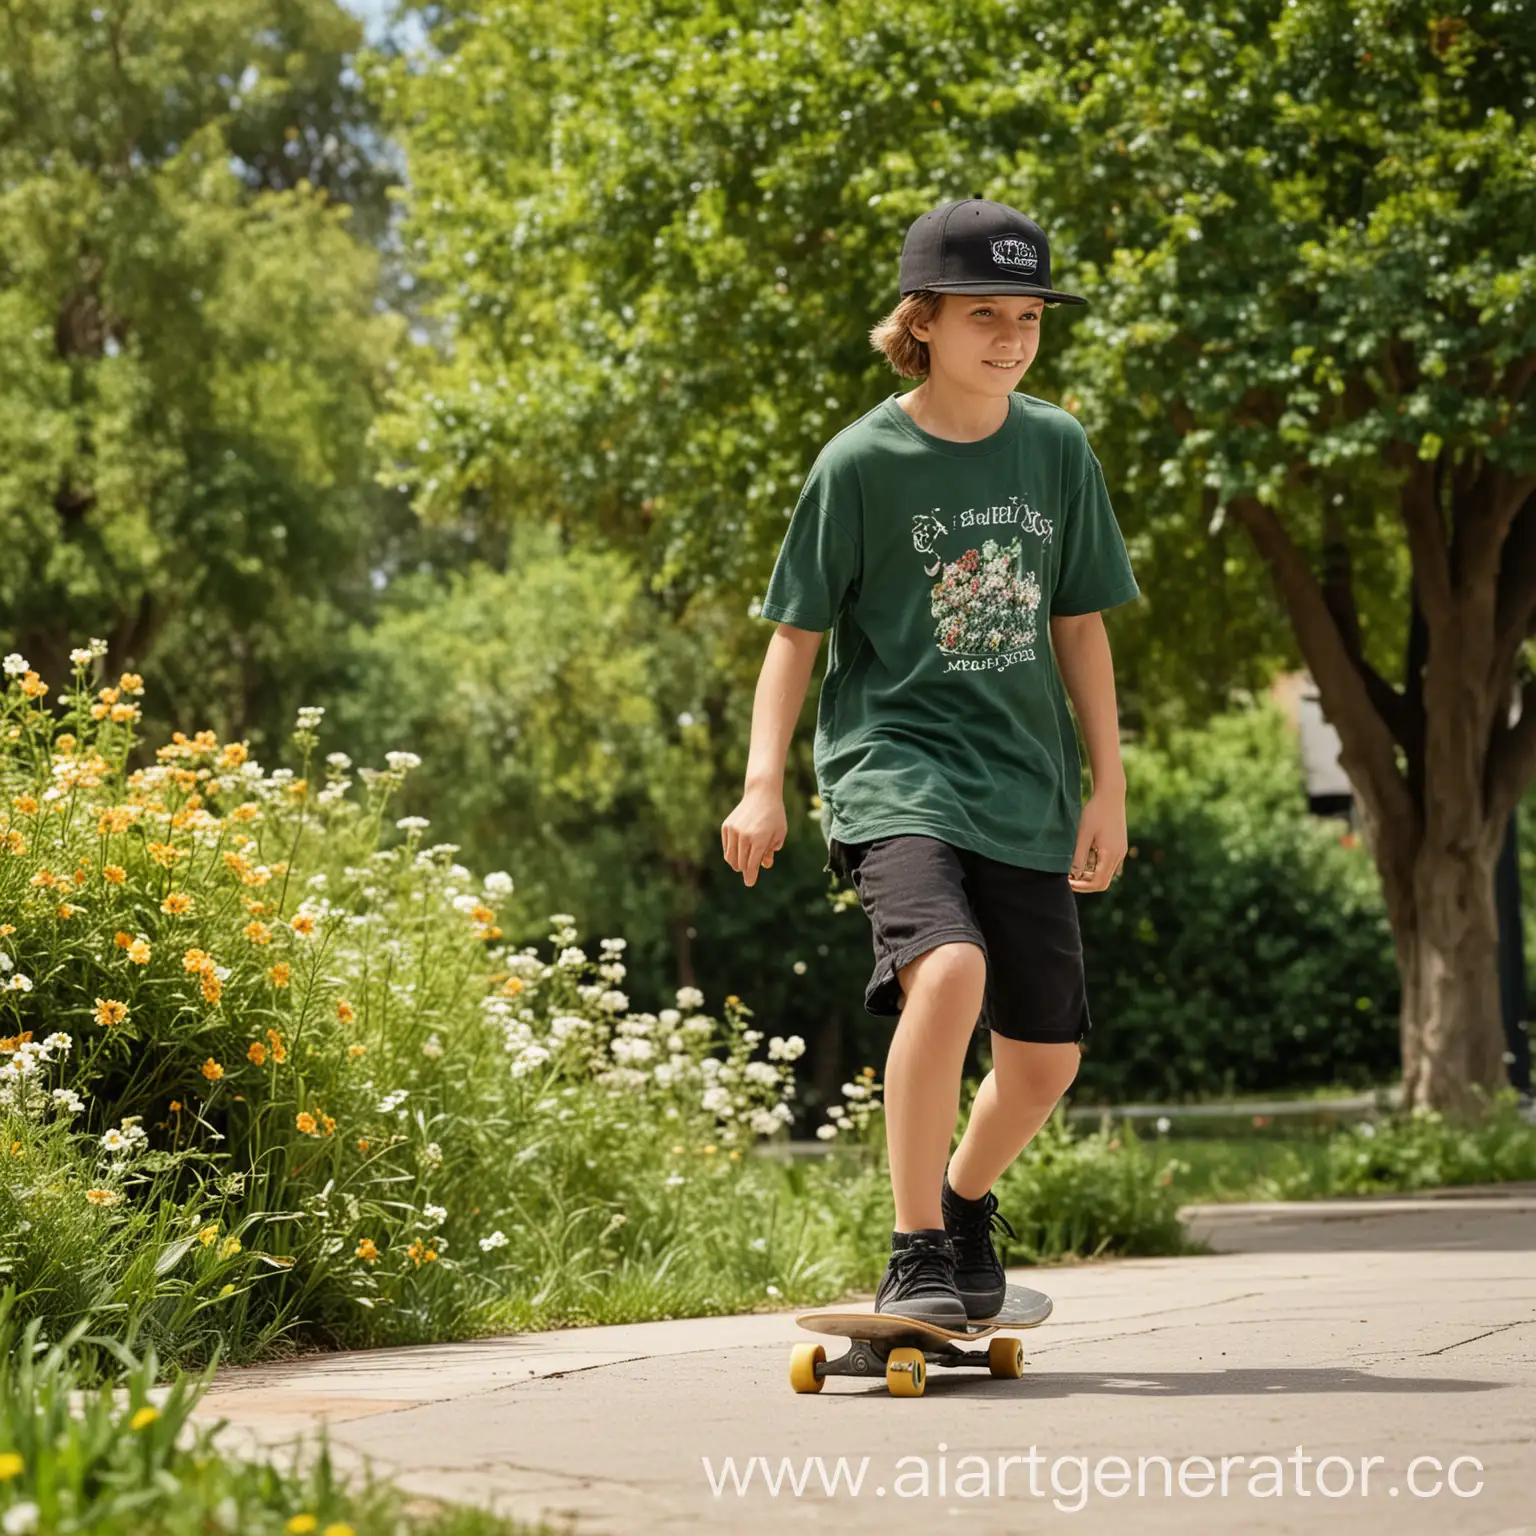 Реальная фотография. Мальчик 12 лет катается на скейте в парке. На мальчике чёрные шорты и зеленая футболка и кепка. Мальчик в полный рост . На заднем плане люди. В парке цветы, дорожки, кусты, деревья